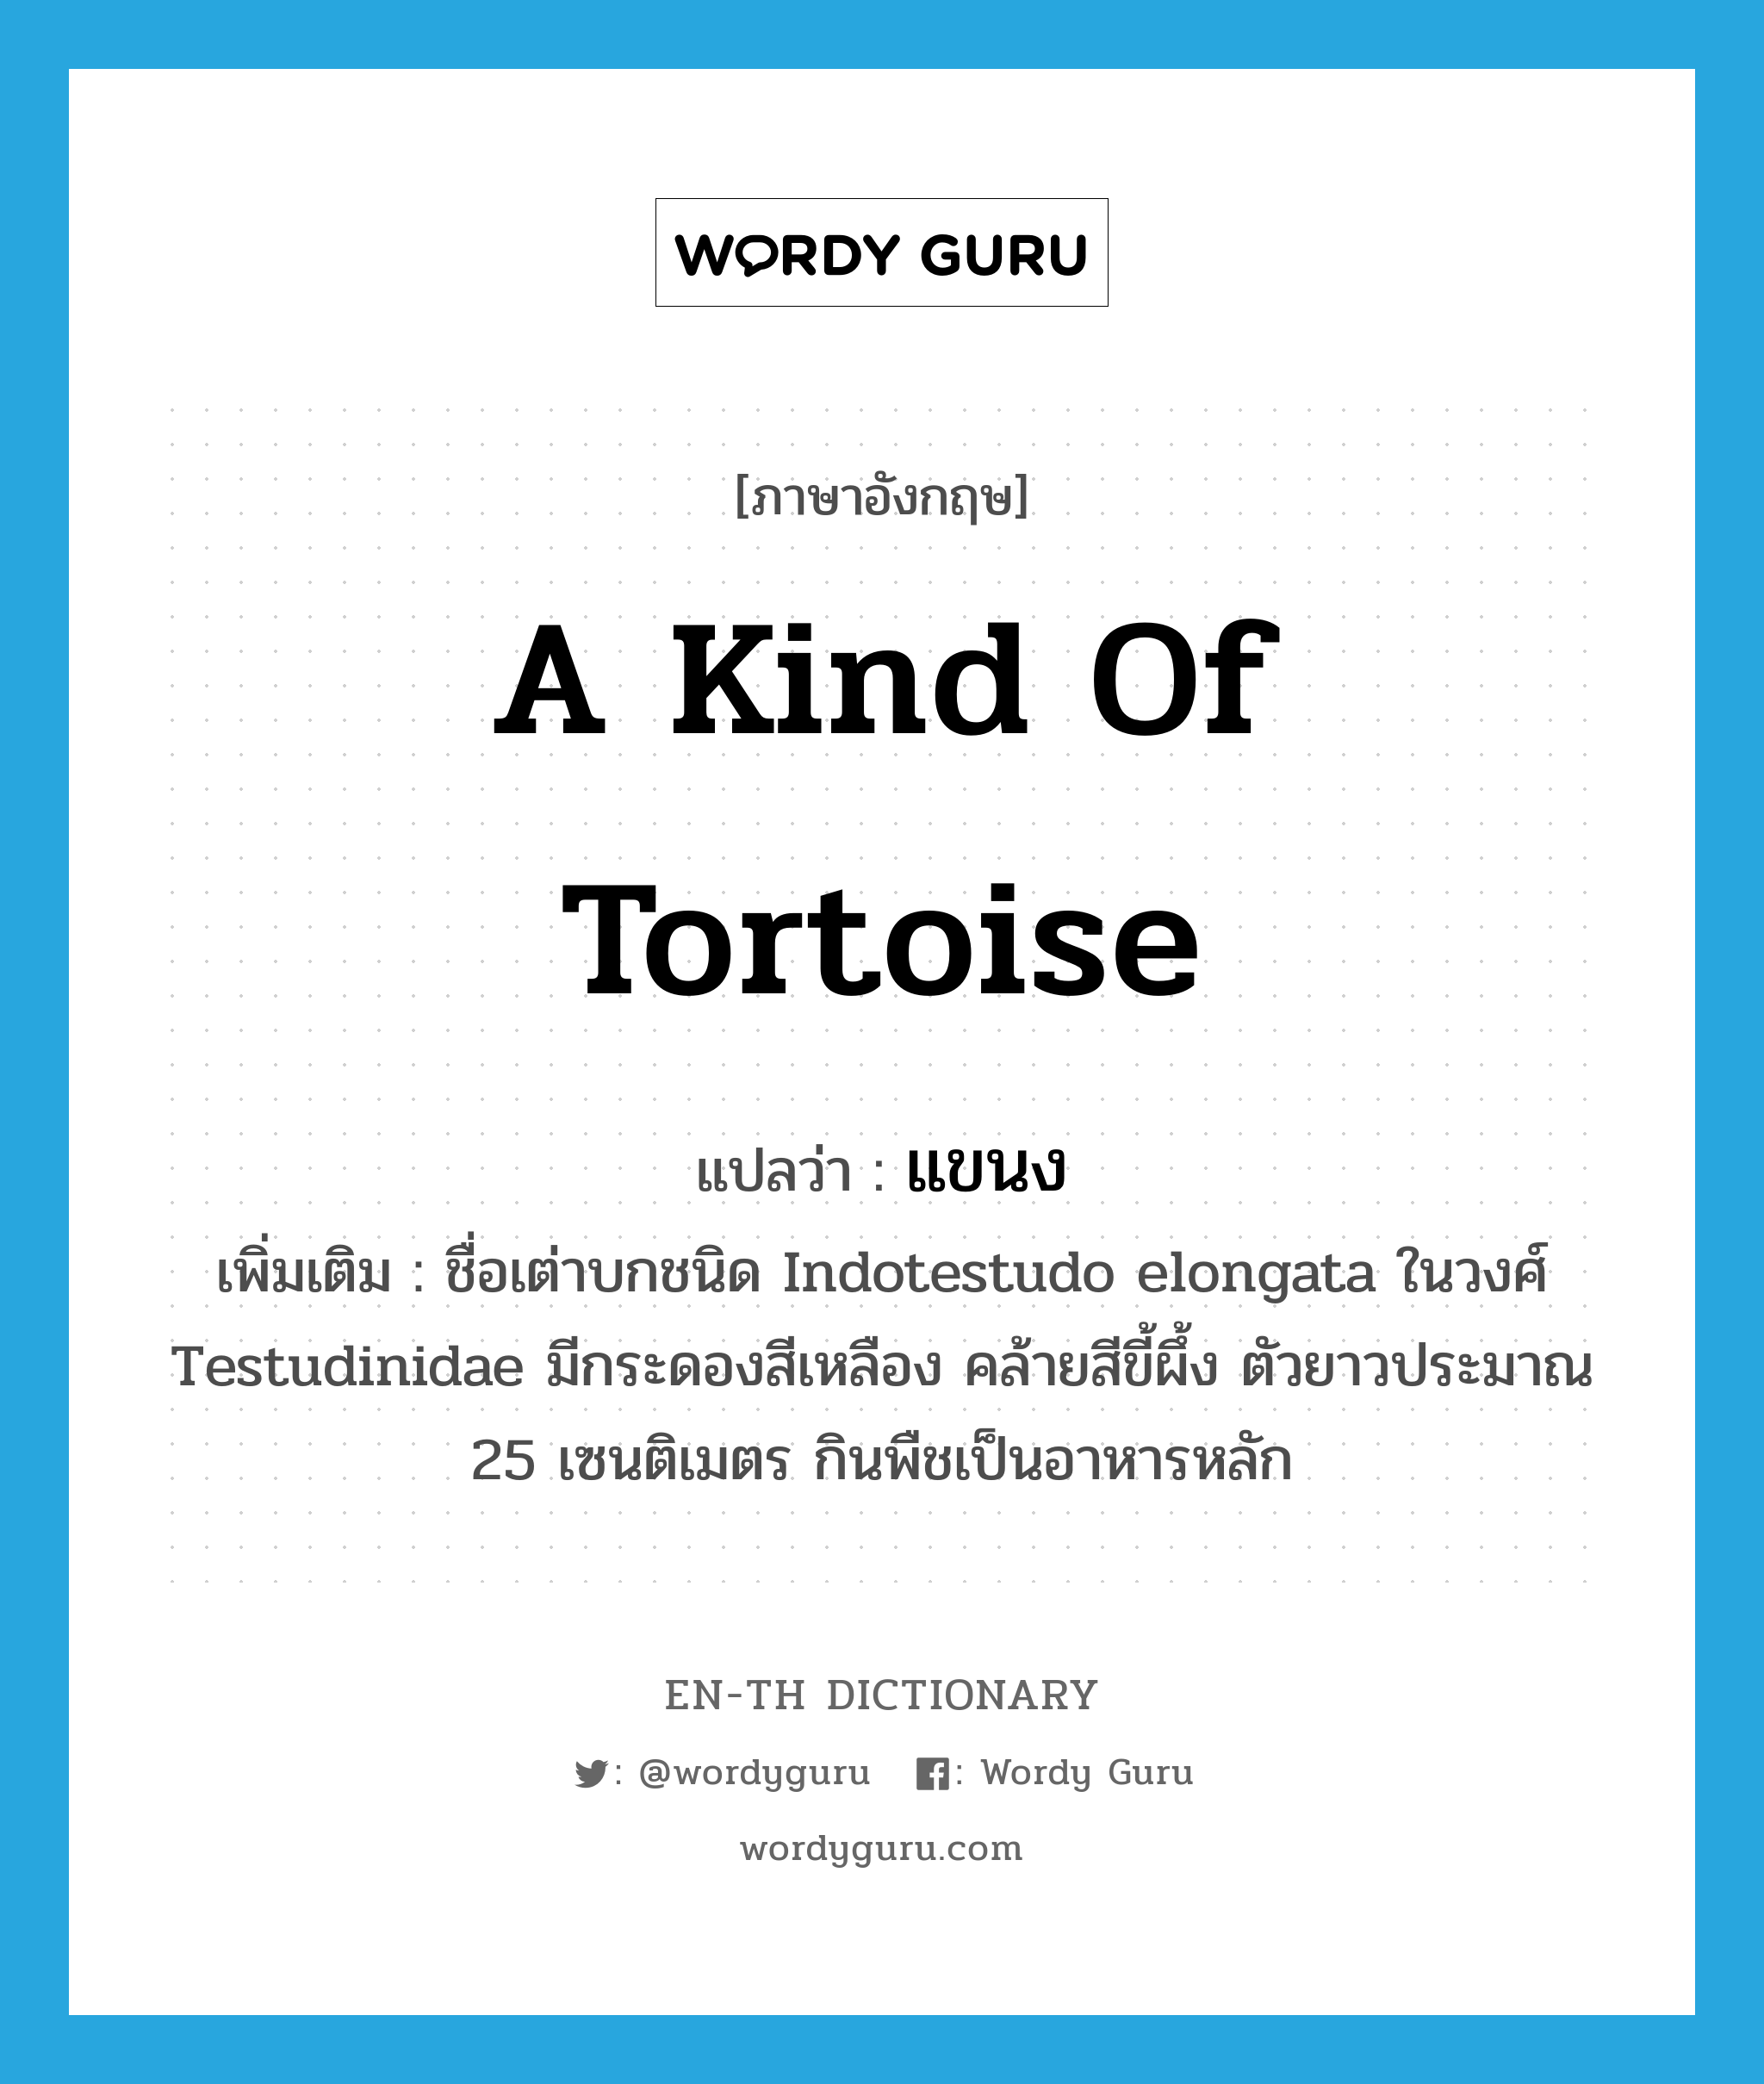 แขนง ภาษาอังกฤษ?, คำศัพท์ภาษาอังกฤษ แขนง แปลว่า a kind of tortoise ประเภท N เพิ่มเติม ชื่อเต่าบกชนิด Indotestudo elongata ในวงศ์ Testudinidae มีกระดองสีเหลือง คล้ายสีขี้ผึ้ง ตัวยาวประมาณ 25 เซนติเมตร กินพืชเป็นอาหารหลัก หมวด N